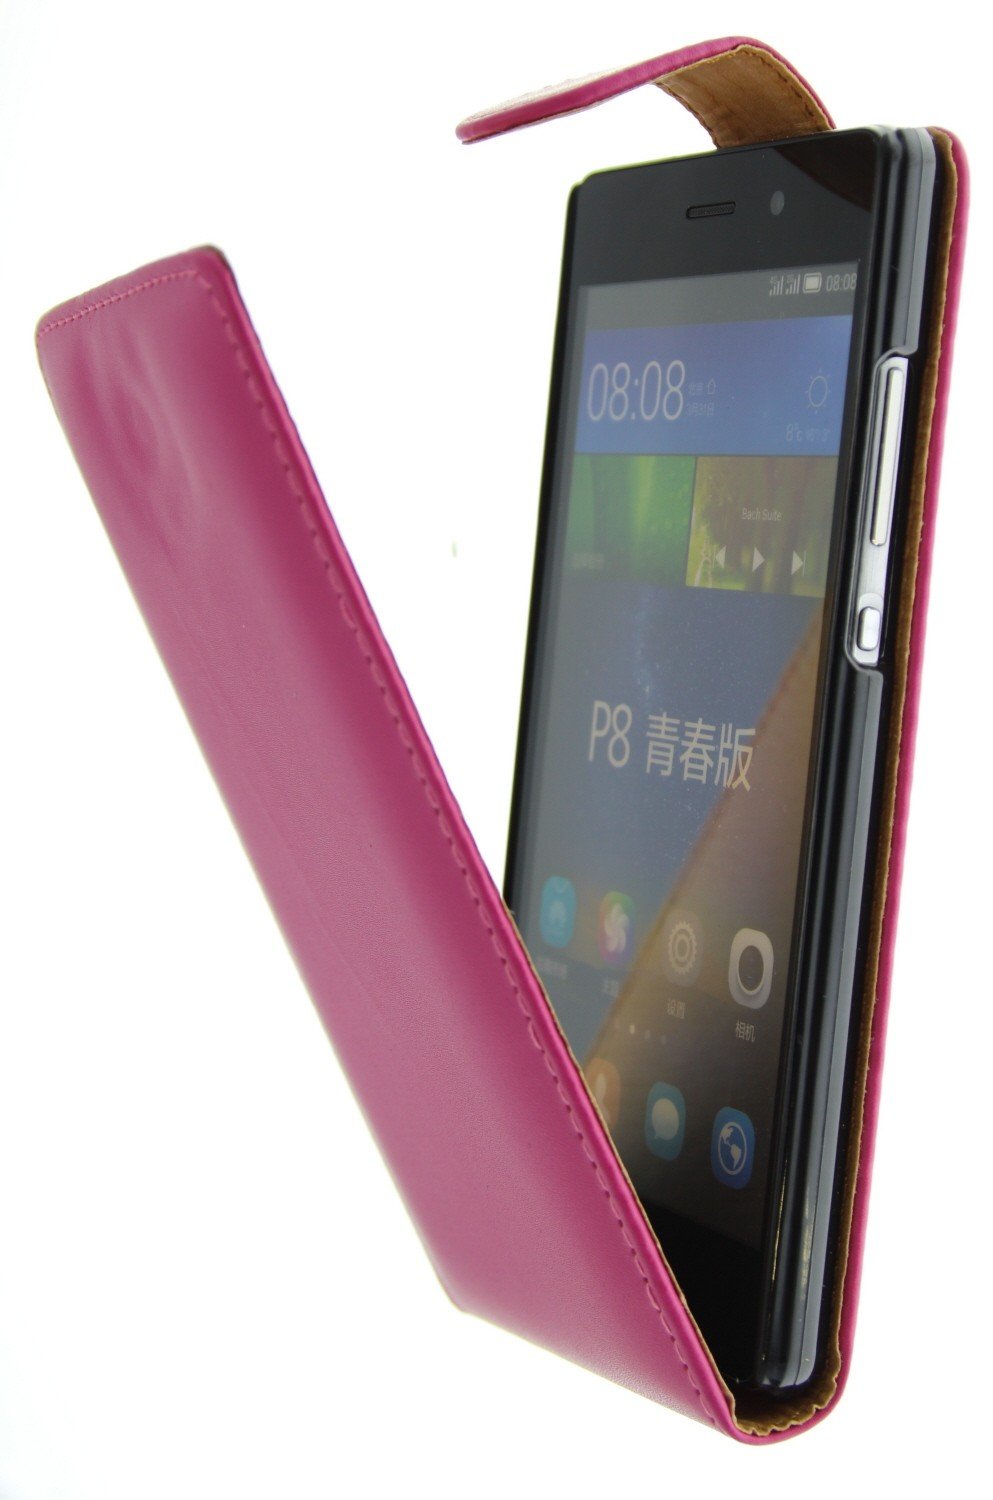 Hesje Geelachtig orgaan Huawei P8 Lite flip hoesje roze kopen | MobileSupplies.nl